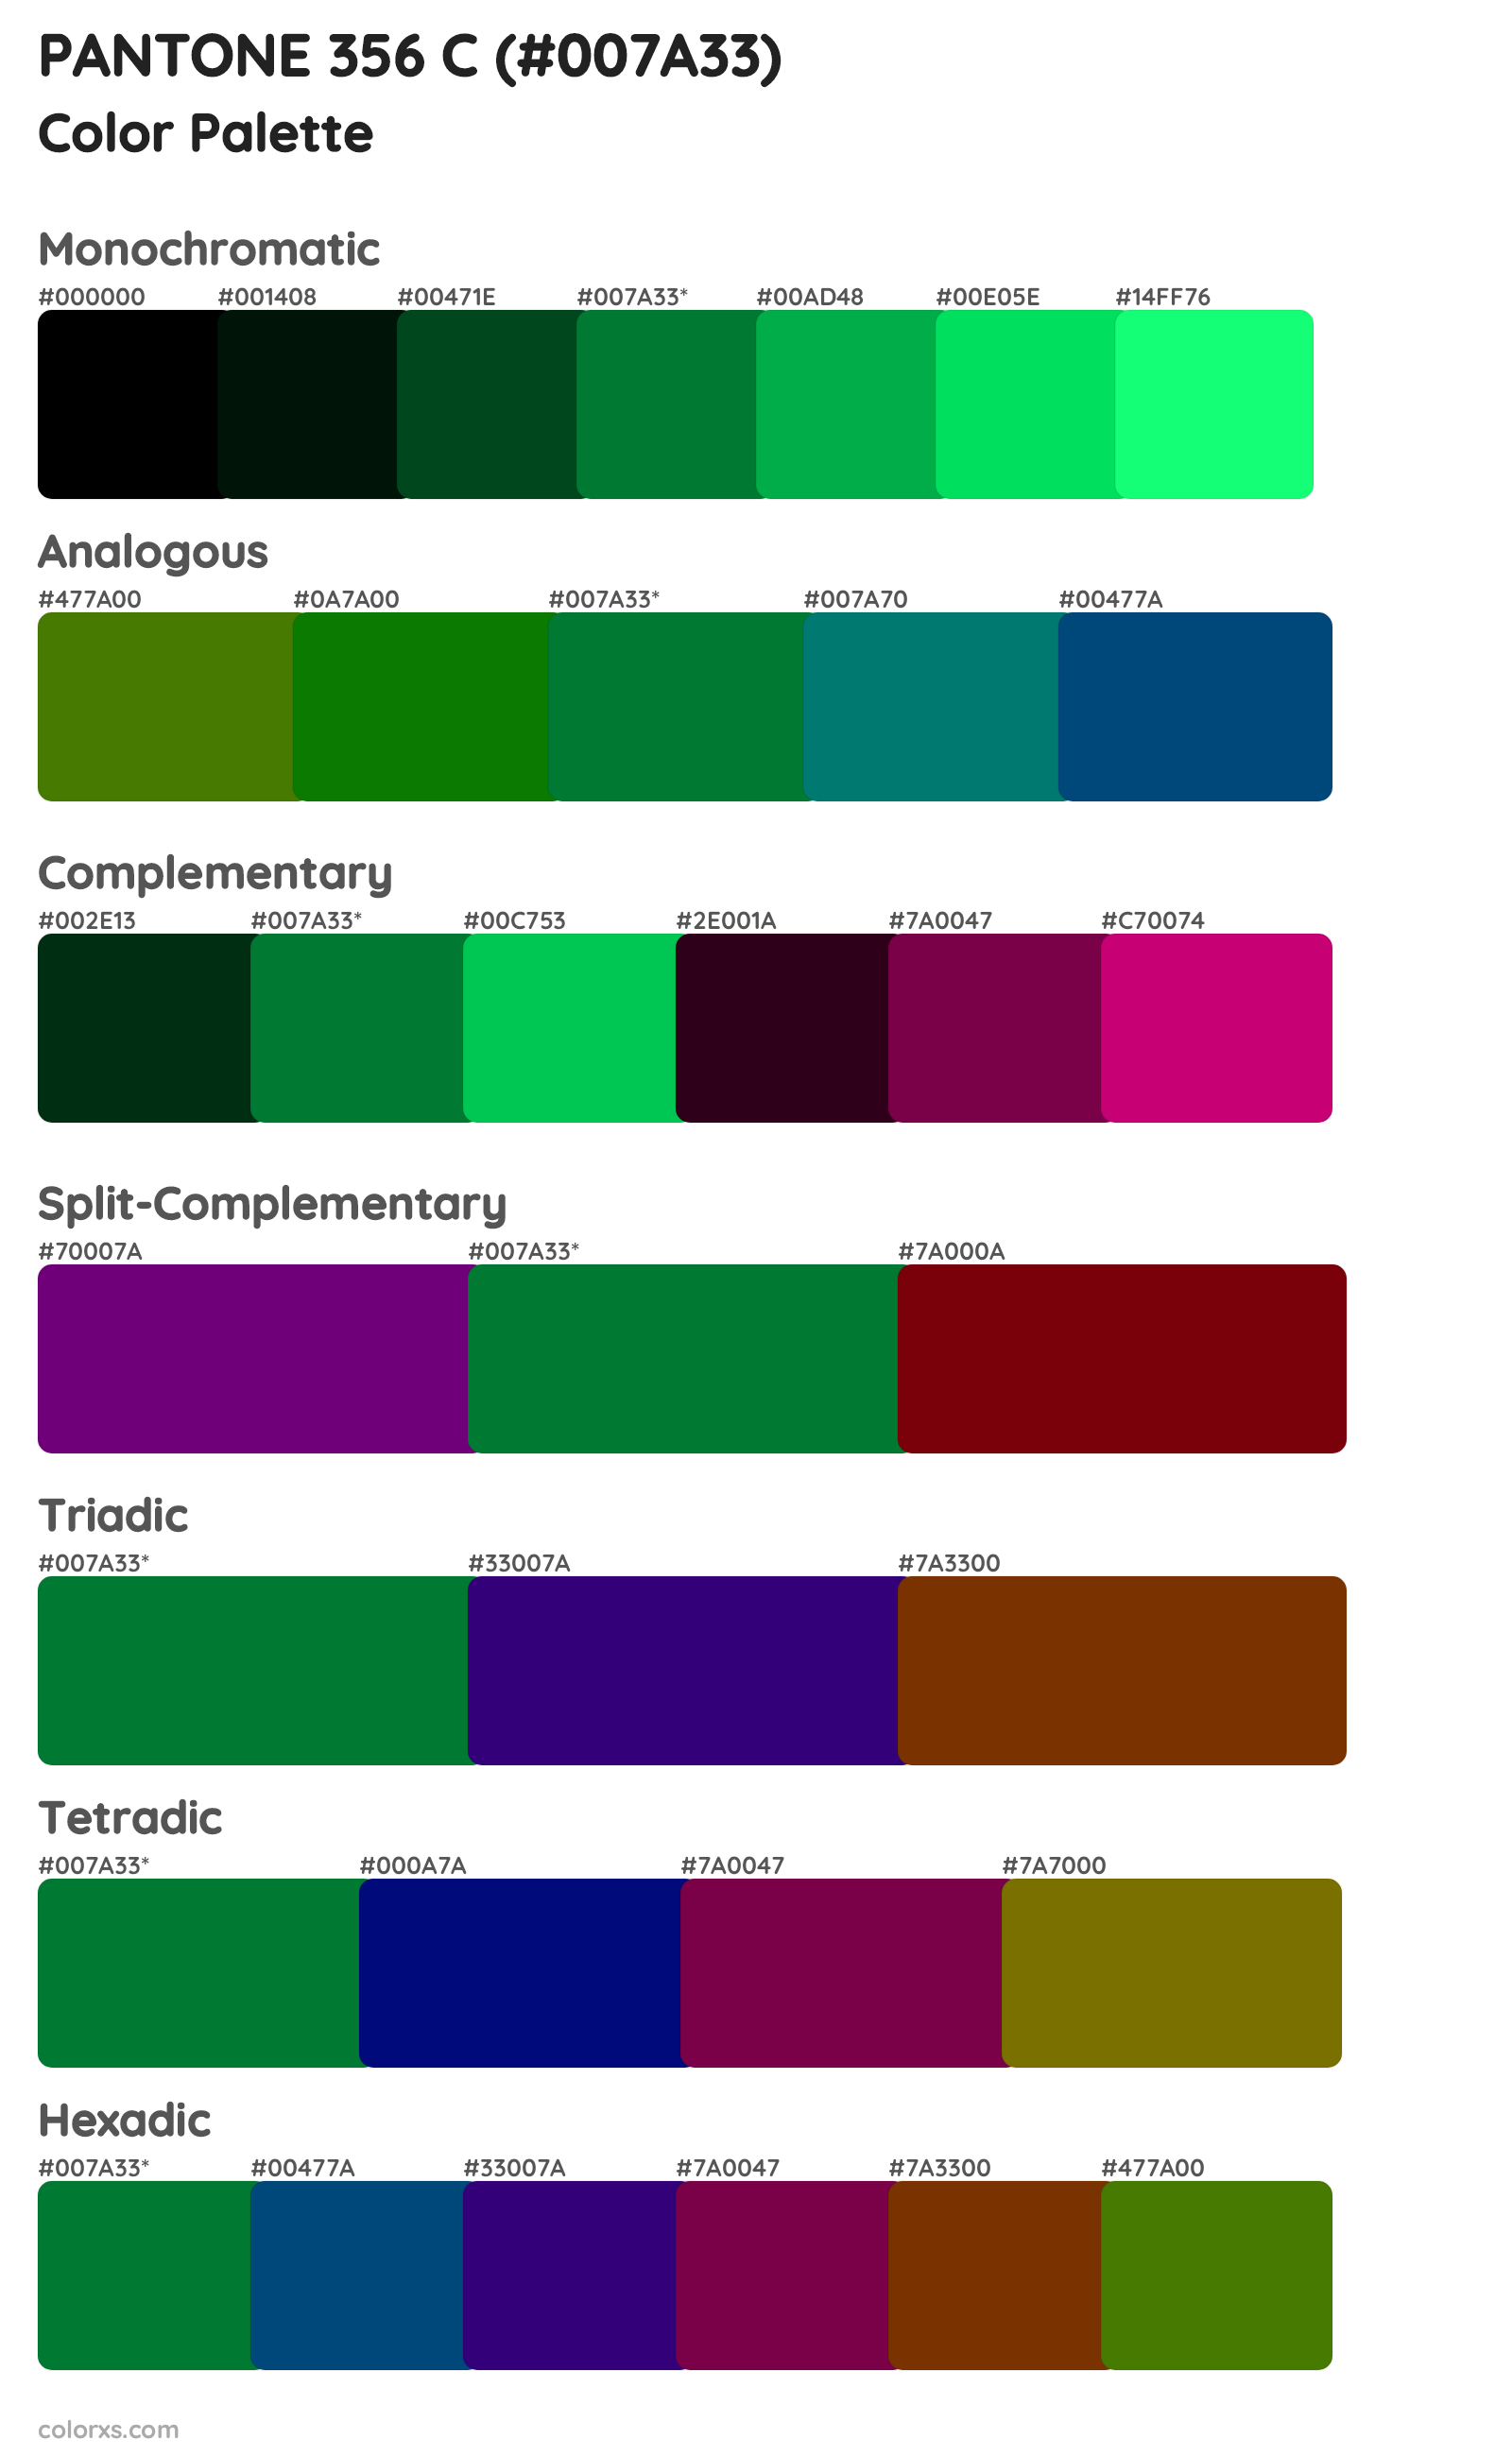 PANTONE 356 C Color Scheme Palettes